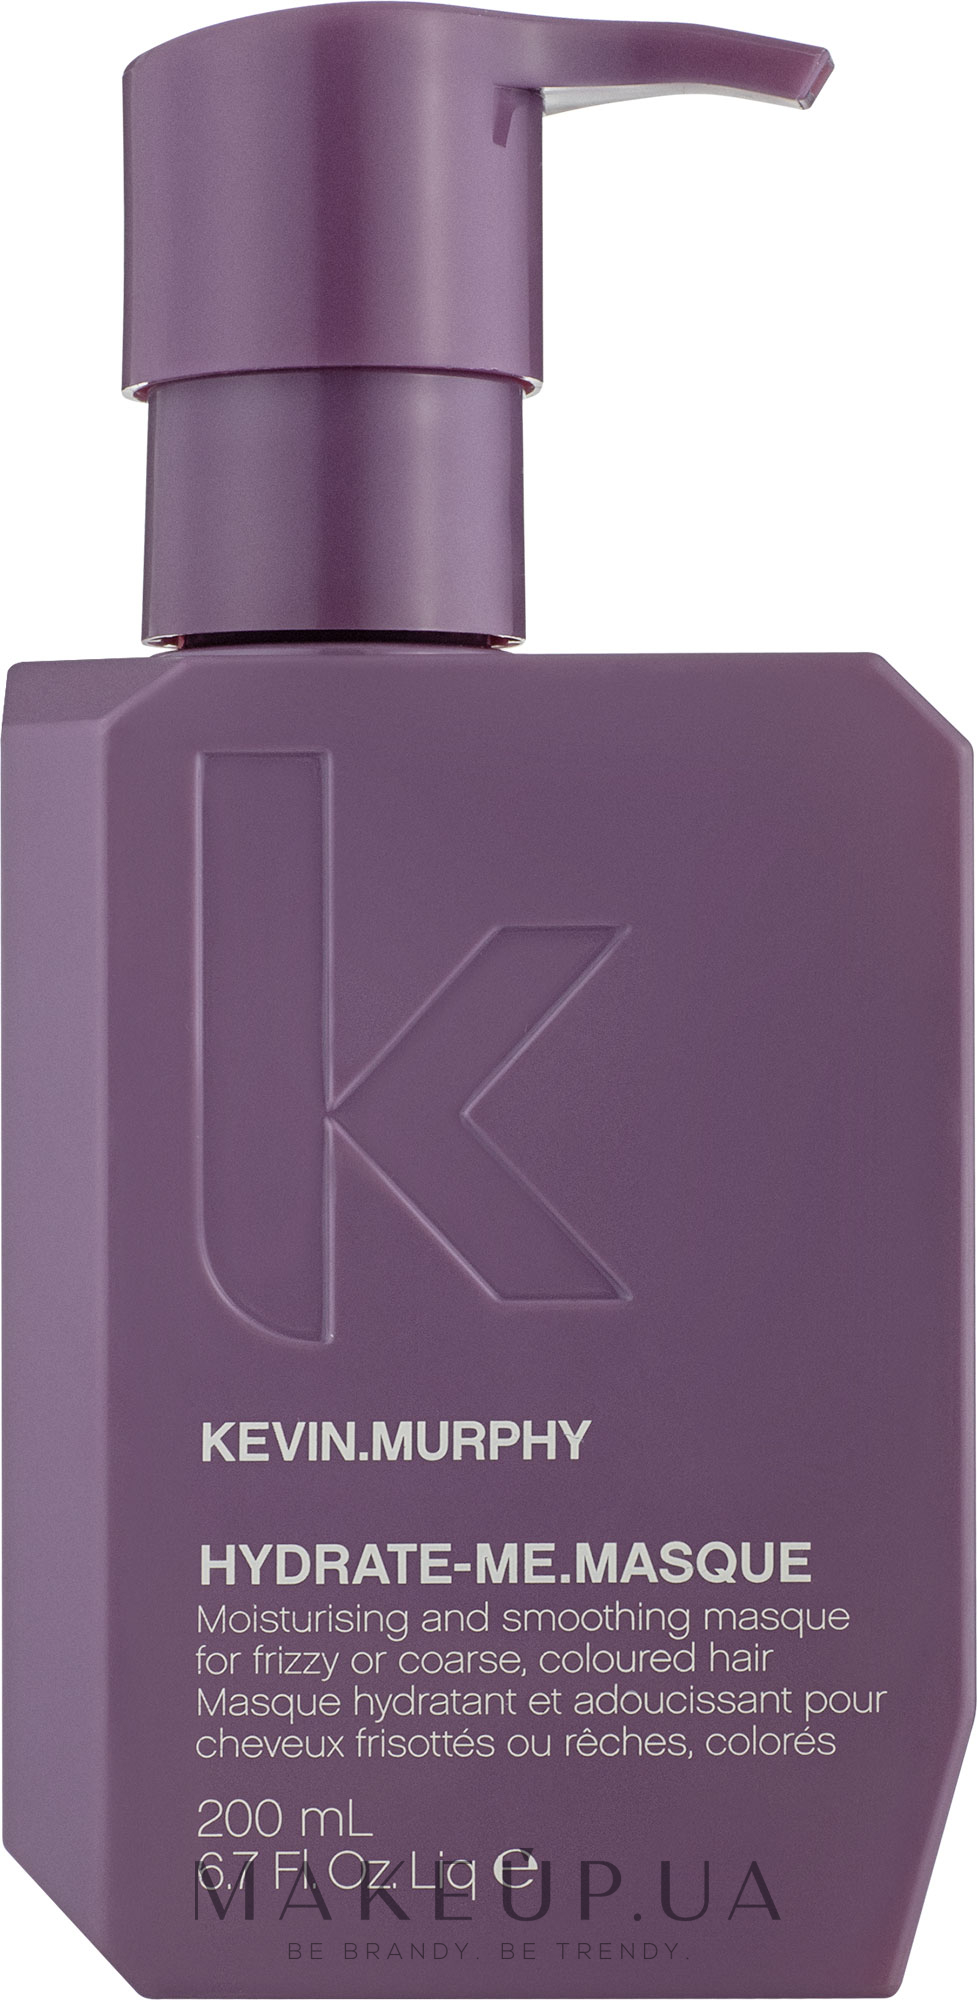 Маска для интенсивного увлажнения волос - Kevin.Murphy Hydrate-Me.Masque — фото 200ml